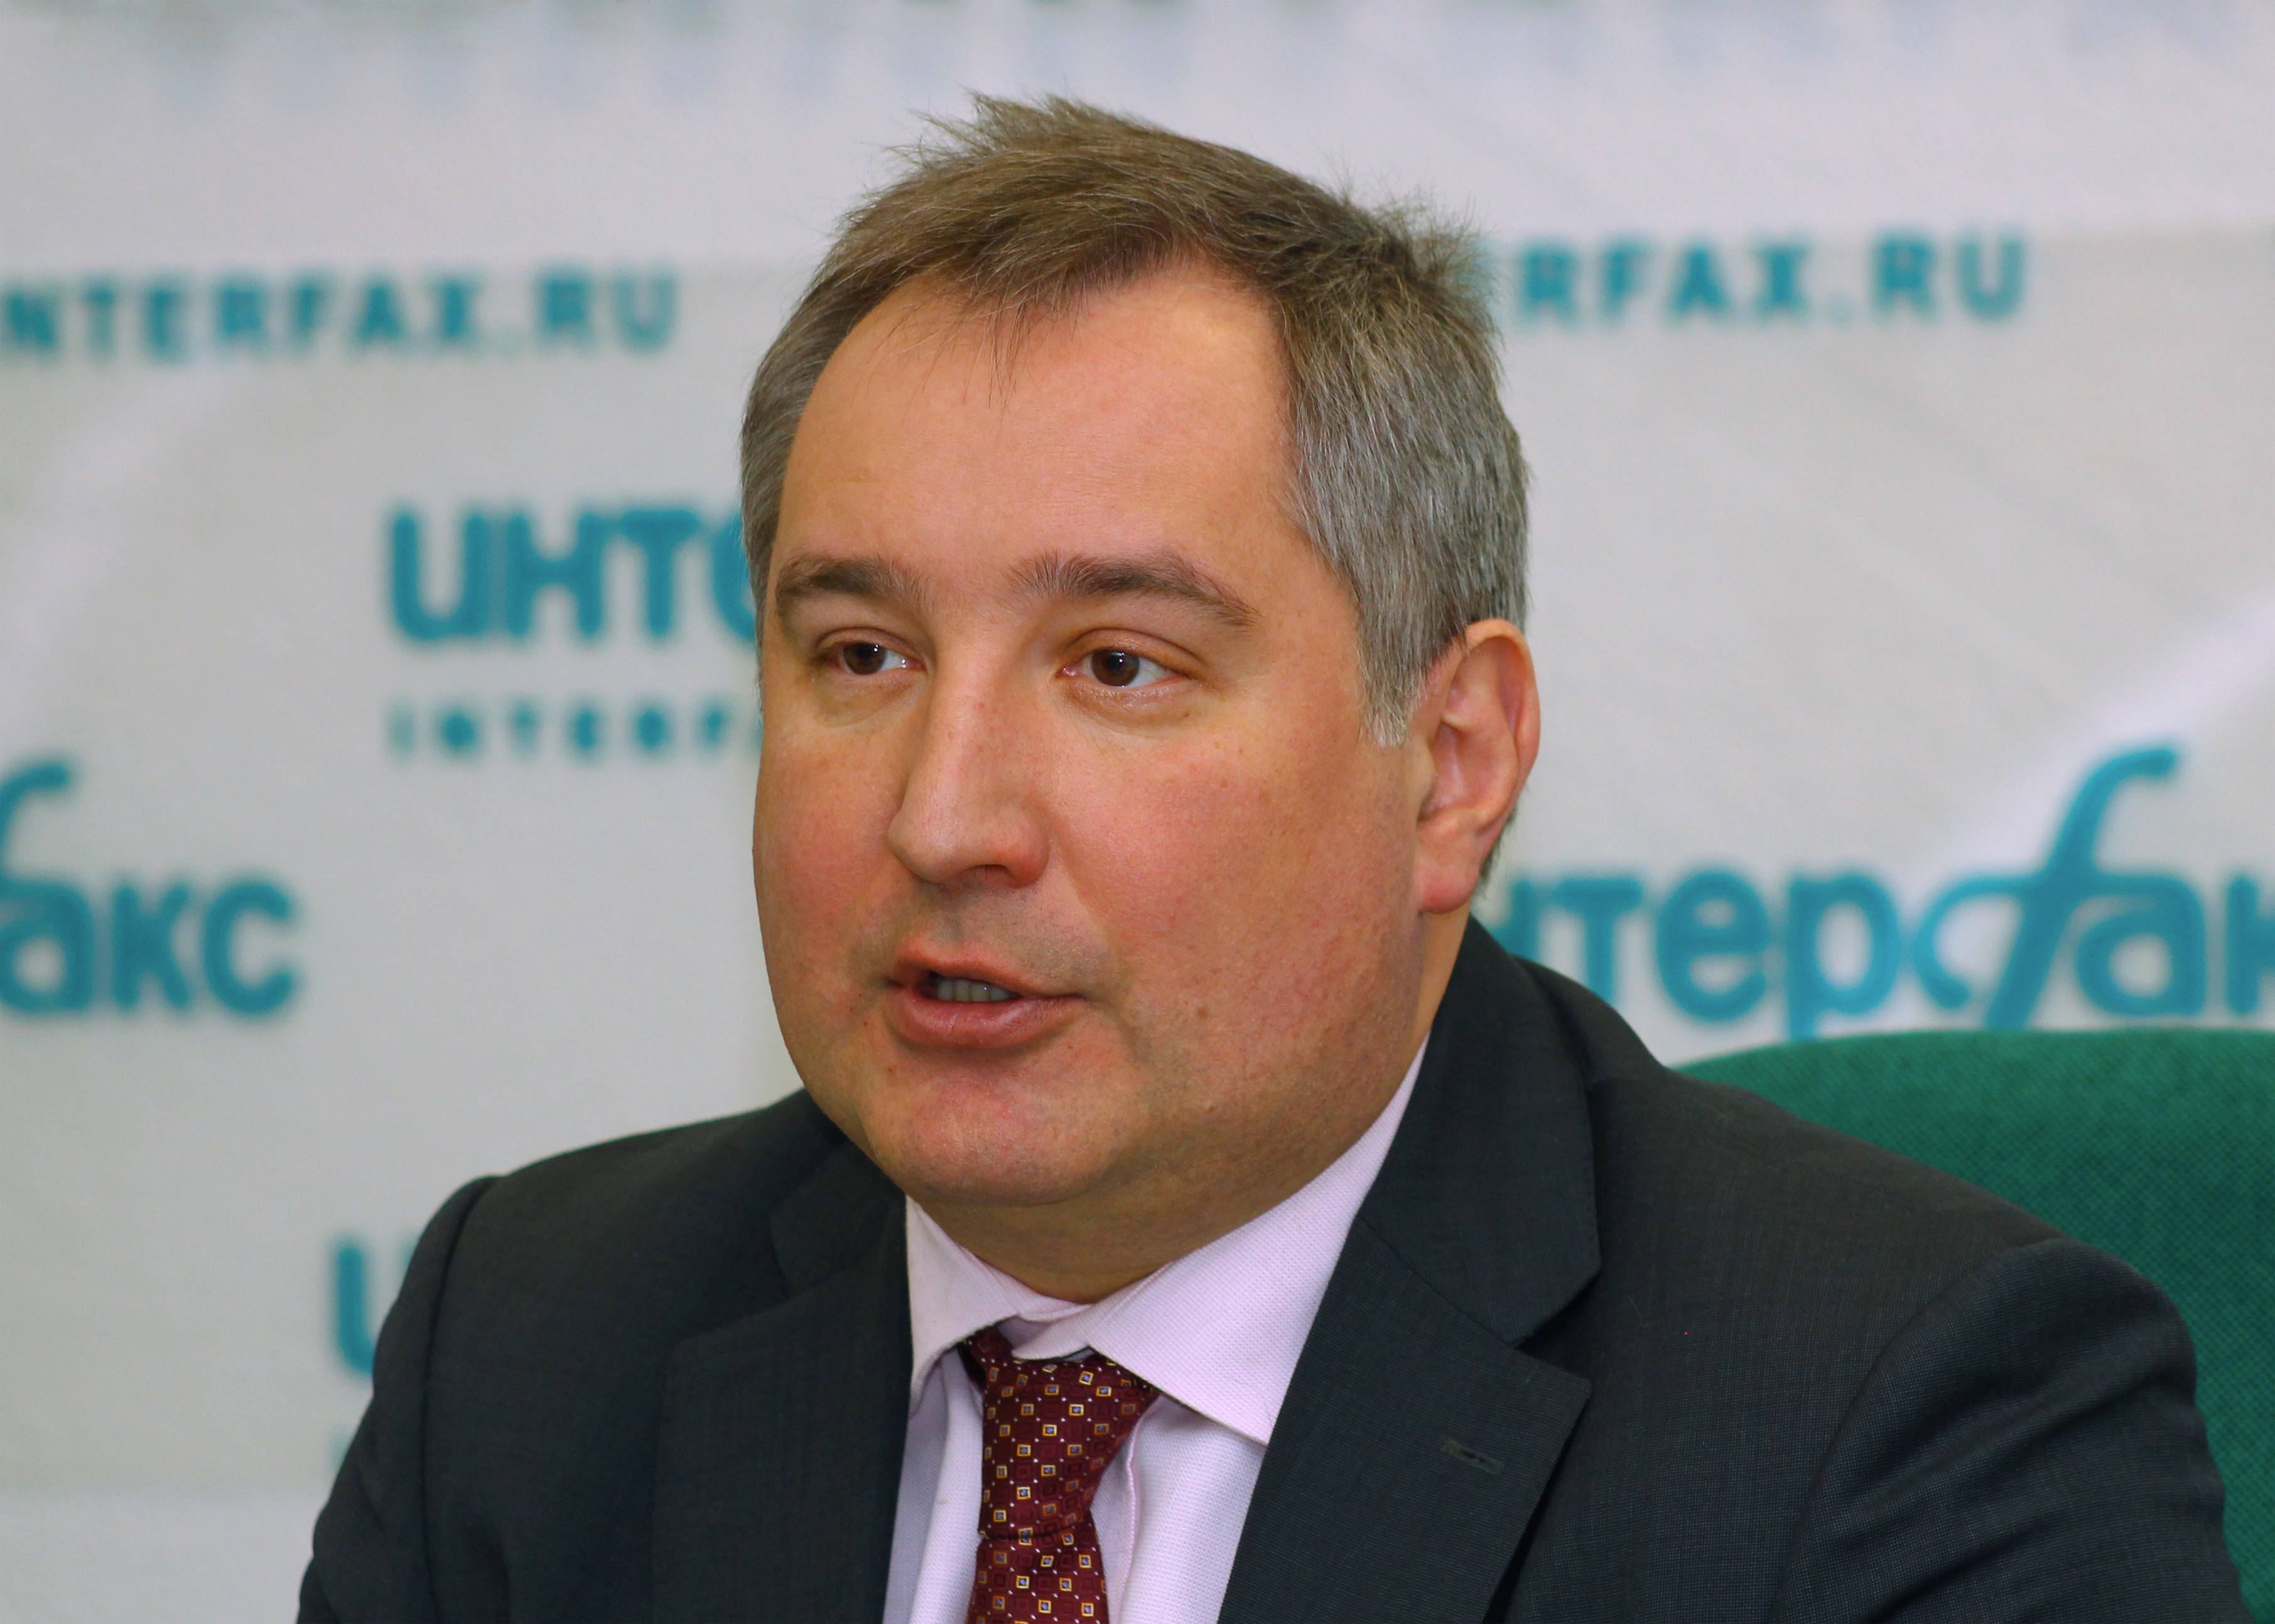 Dmitry Rogozin Moscow Interfax 02-2011